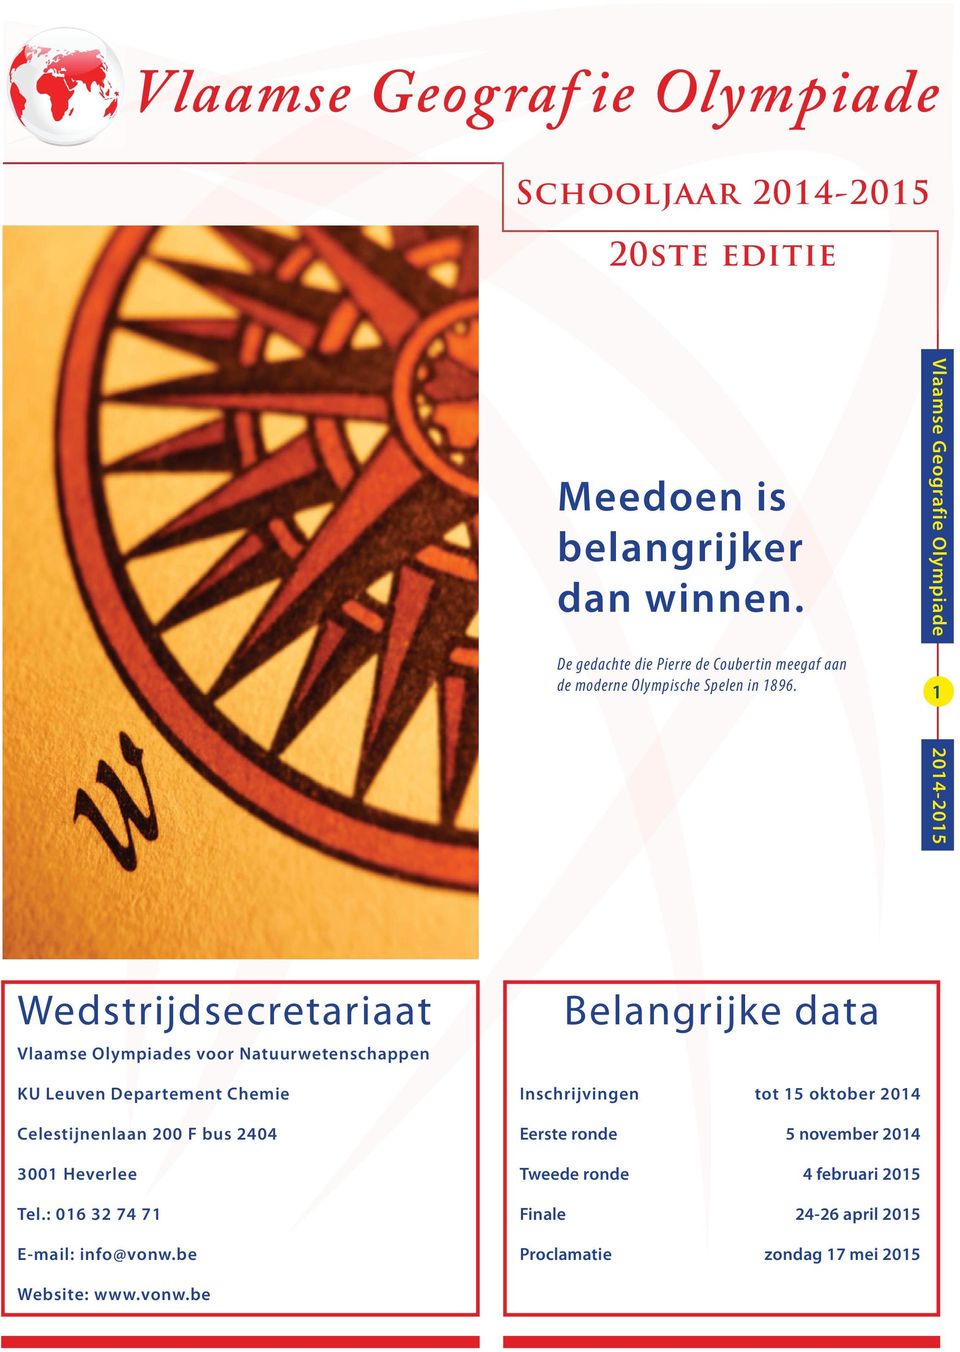 Vlaamse Geografie Olympiade 2014-2015 1 Wedstrijdsecretariaat Vlaamse Olympiades voor Natuurwetenschappen Belangrijke data KU Leuven Departement